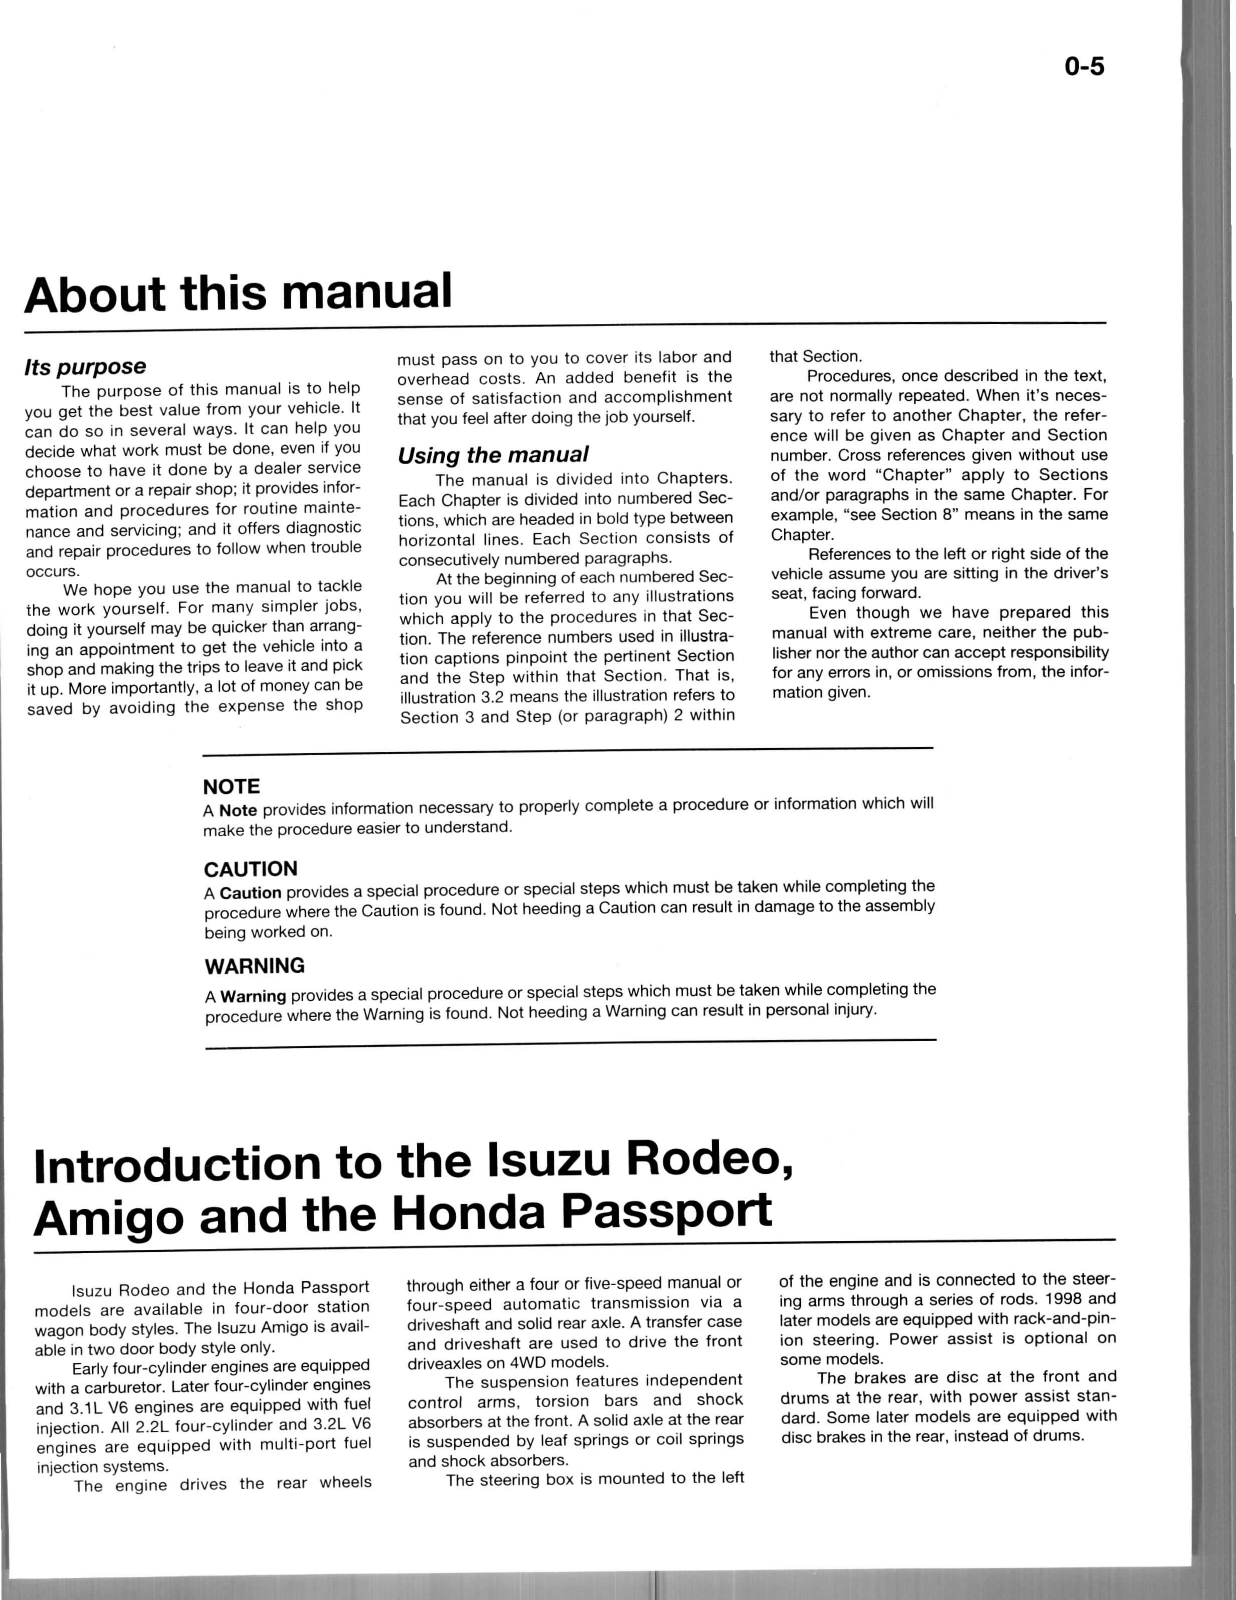 1989-2002 Isuzu Rodeo repair manual Preview image 2